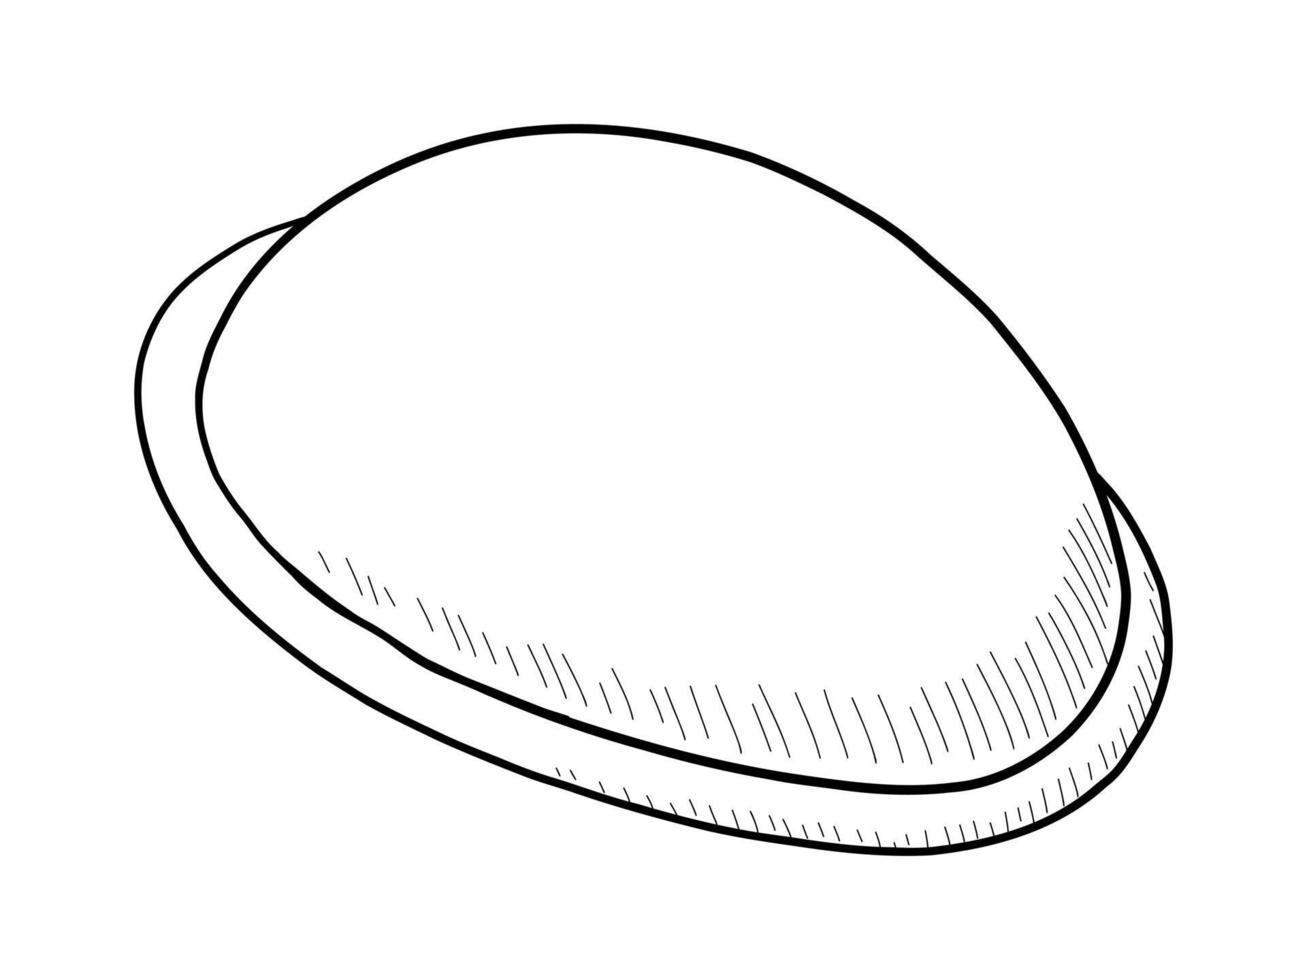 vektor svart och vit kontur illustration av en gynekologisk vaginal diafragman